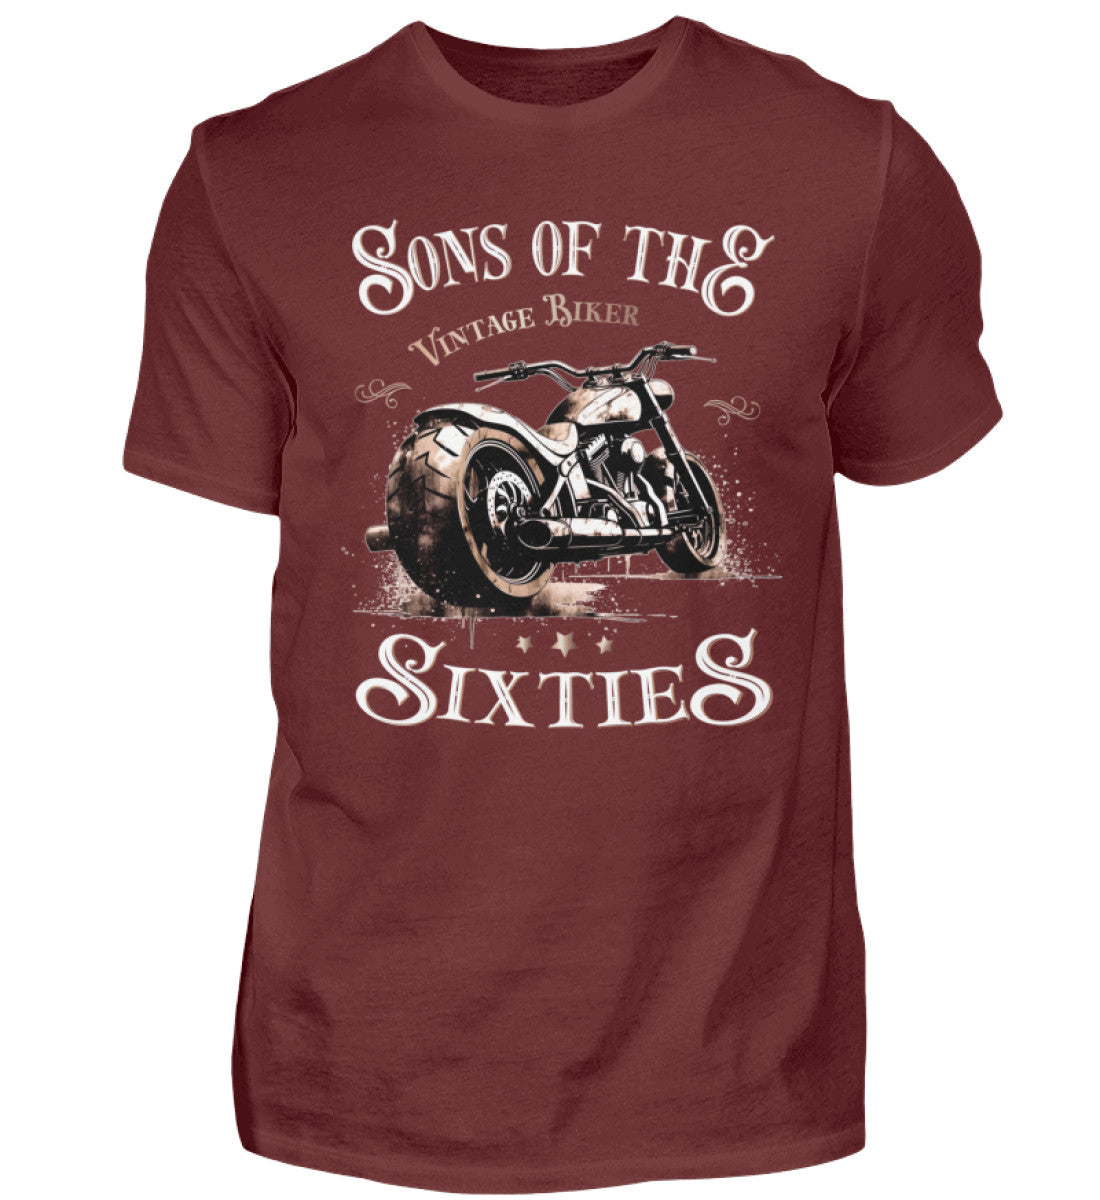 Ein Biker T-Shirt für Motorradfahrer von Wingbikers mit dem Aufdruck, Sons of the Sixties - Vintage Biker, in weinrot.